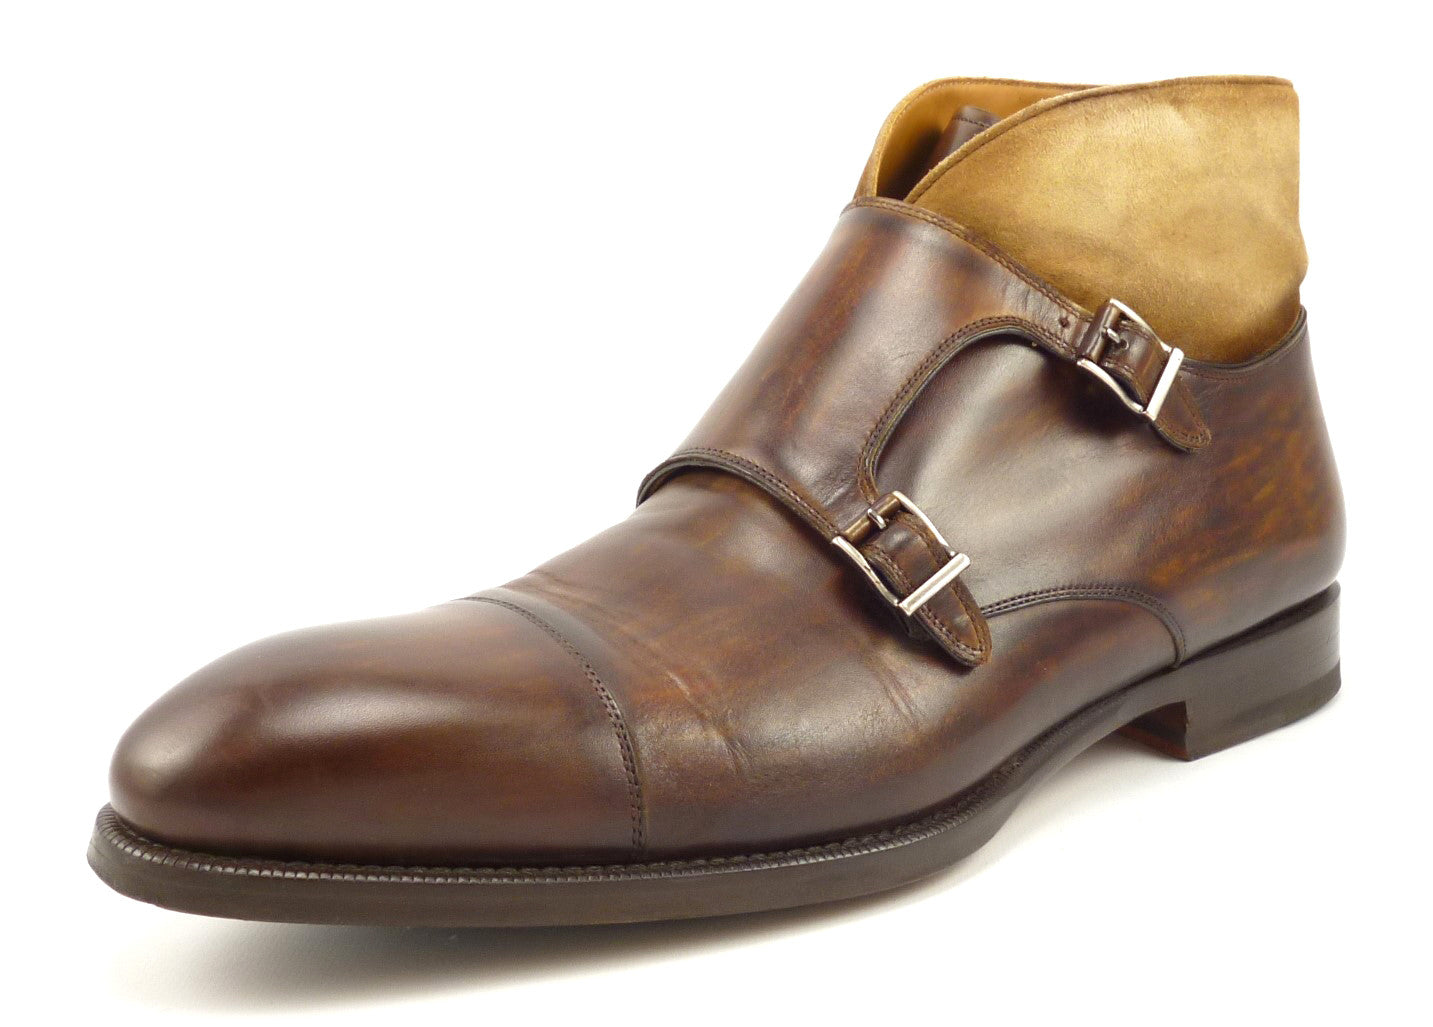 magnanni boots sale